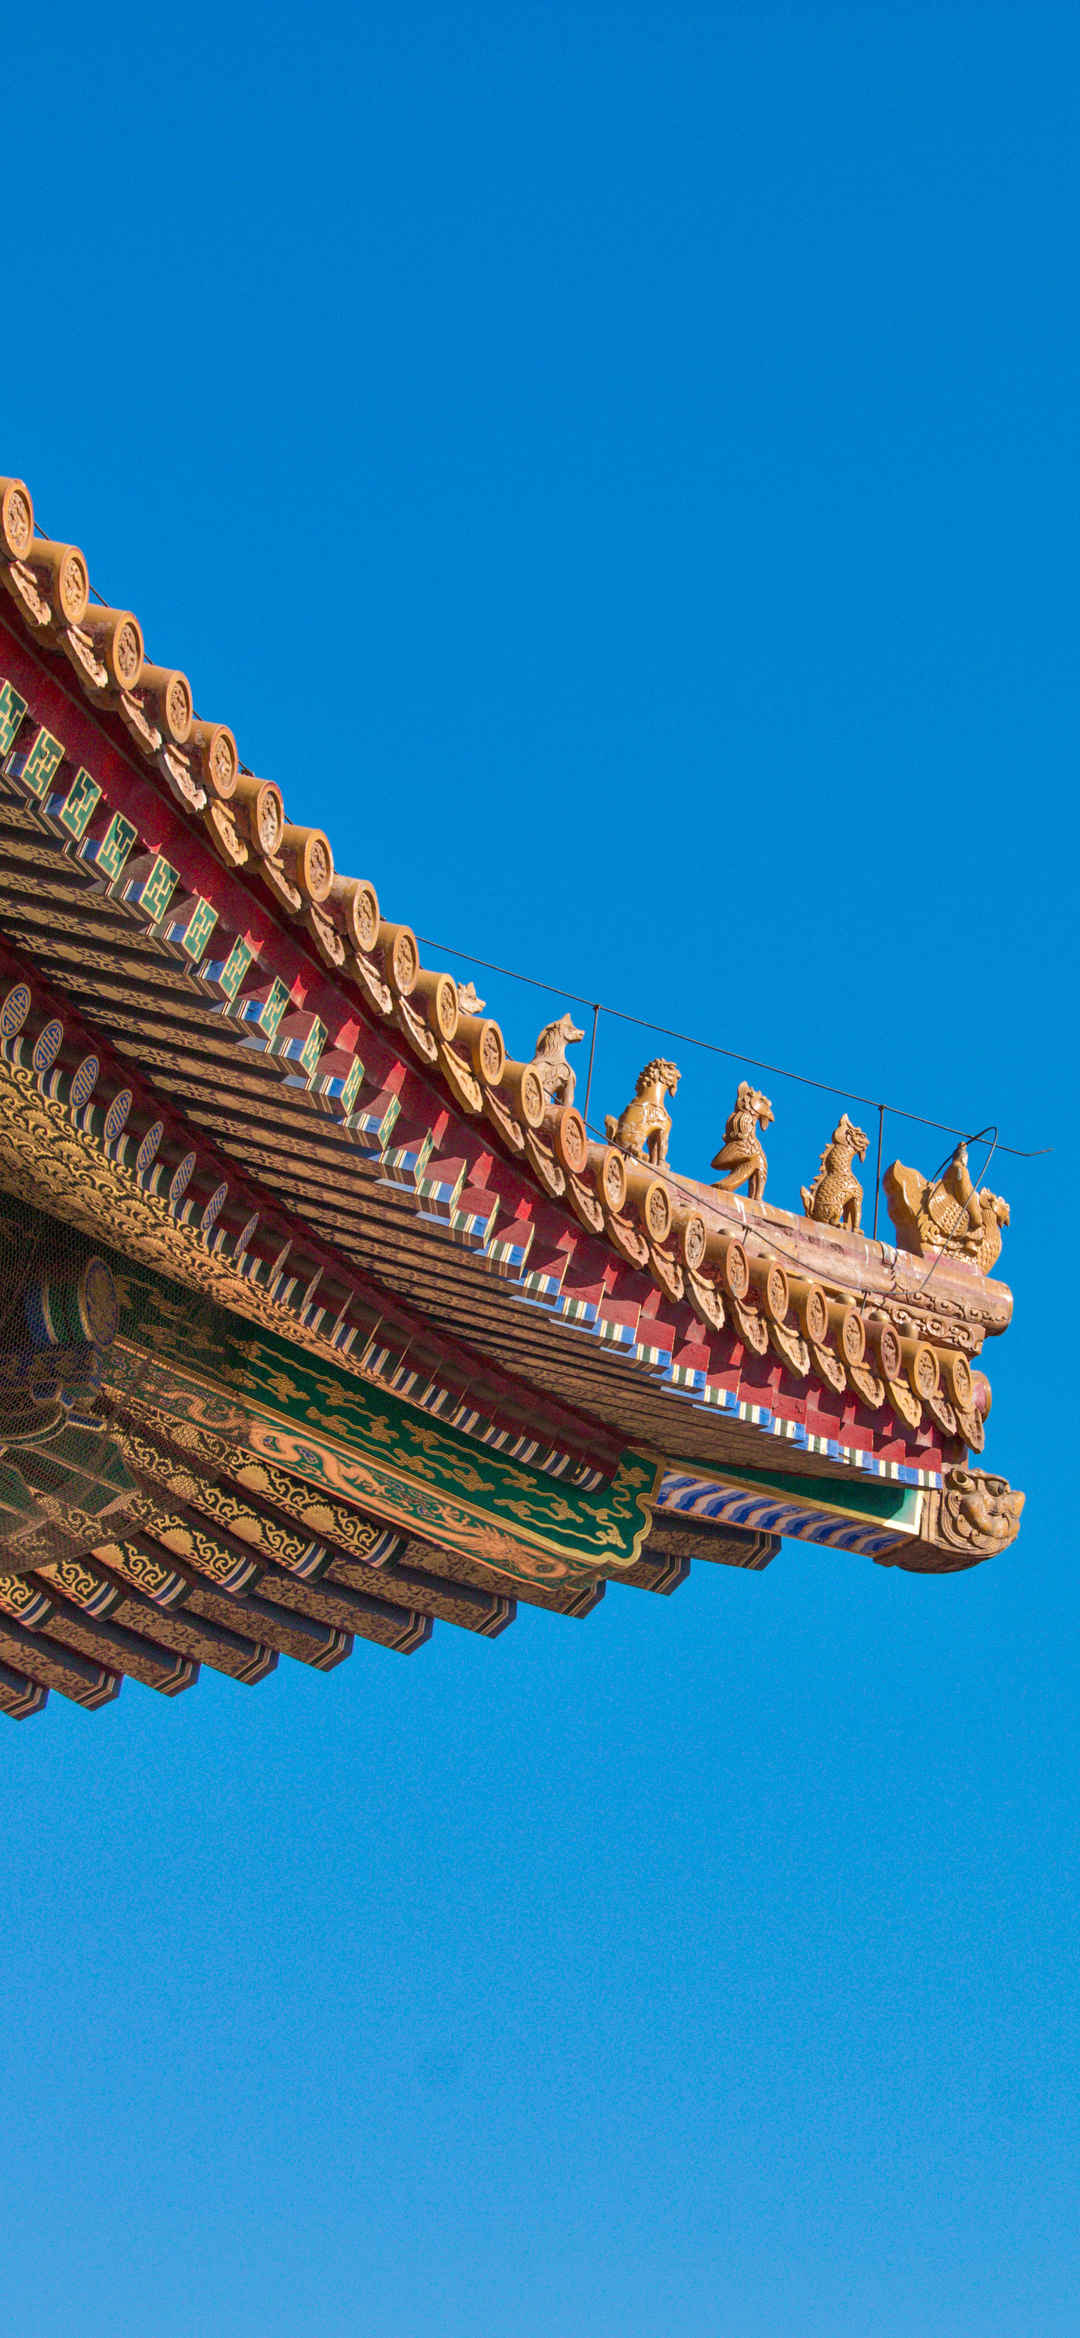 北京故宫天坛房檐雕栏风景壁纸-